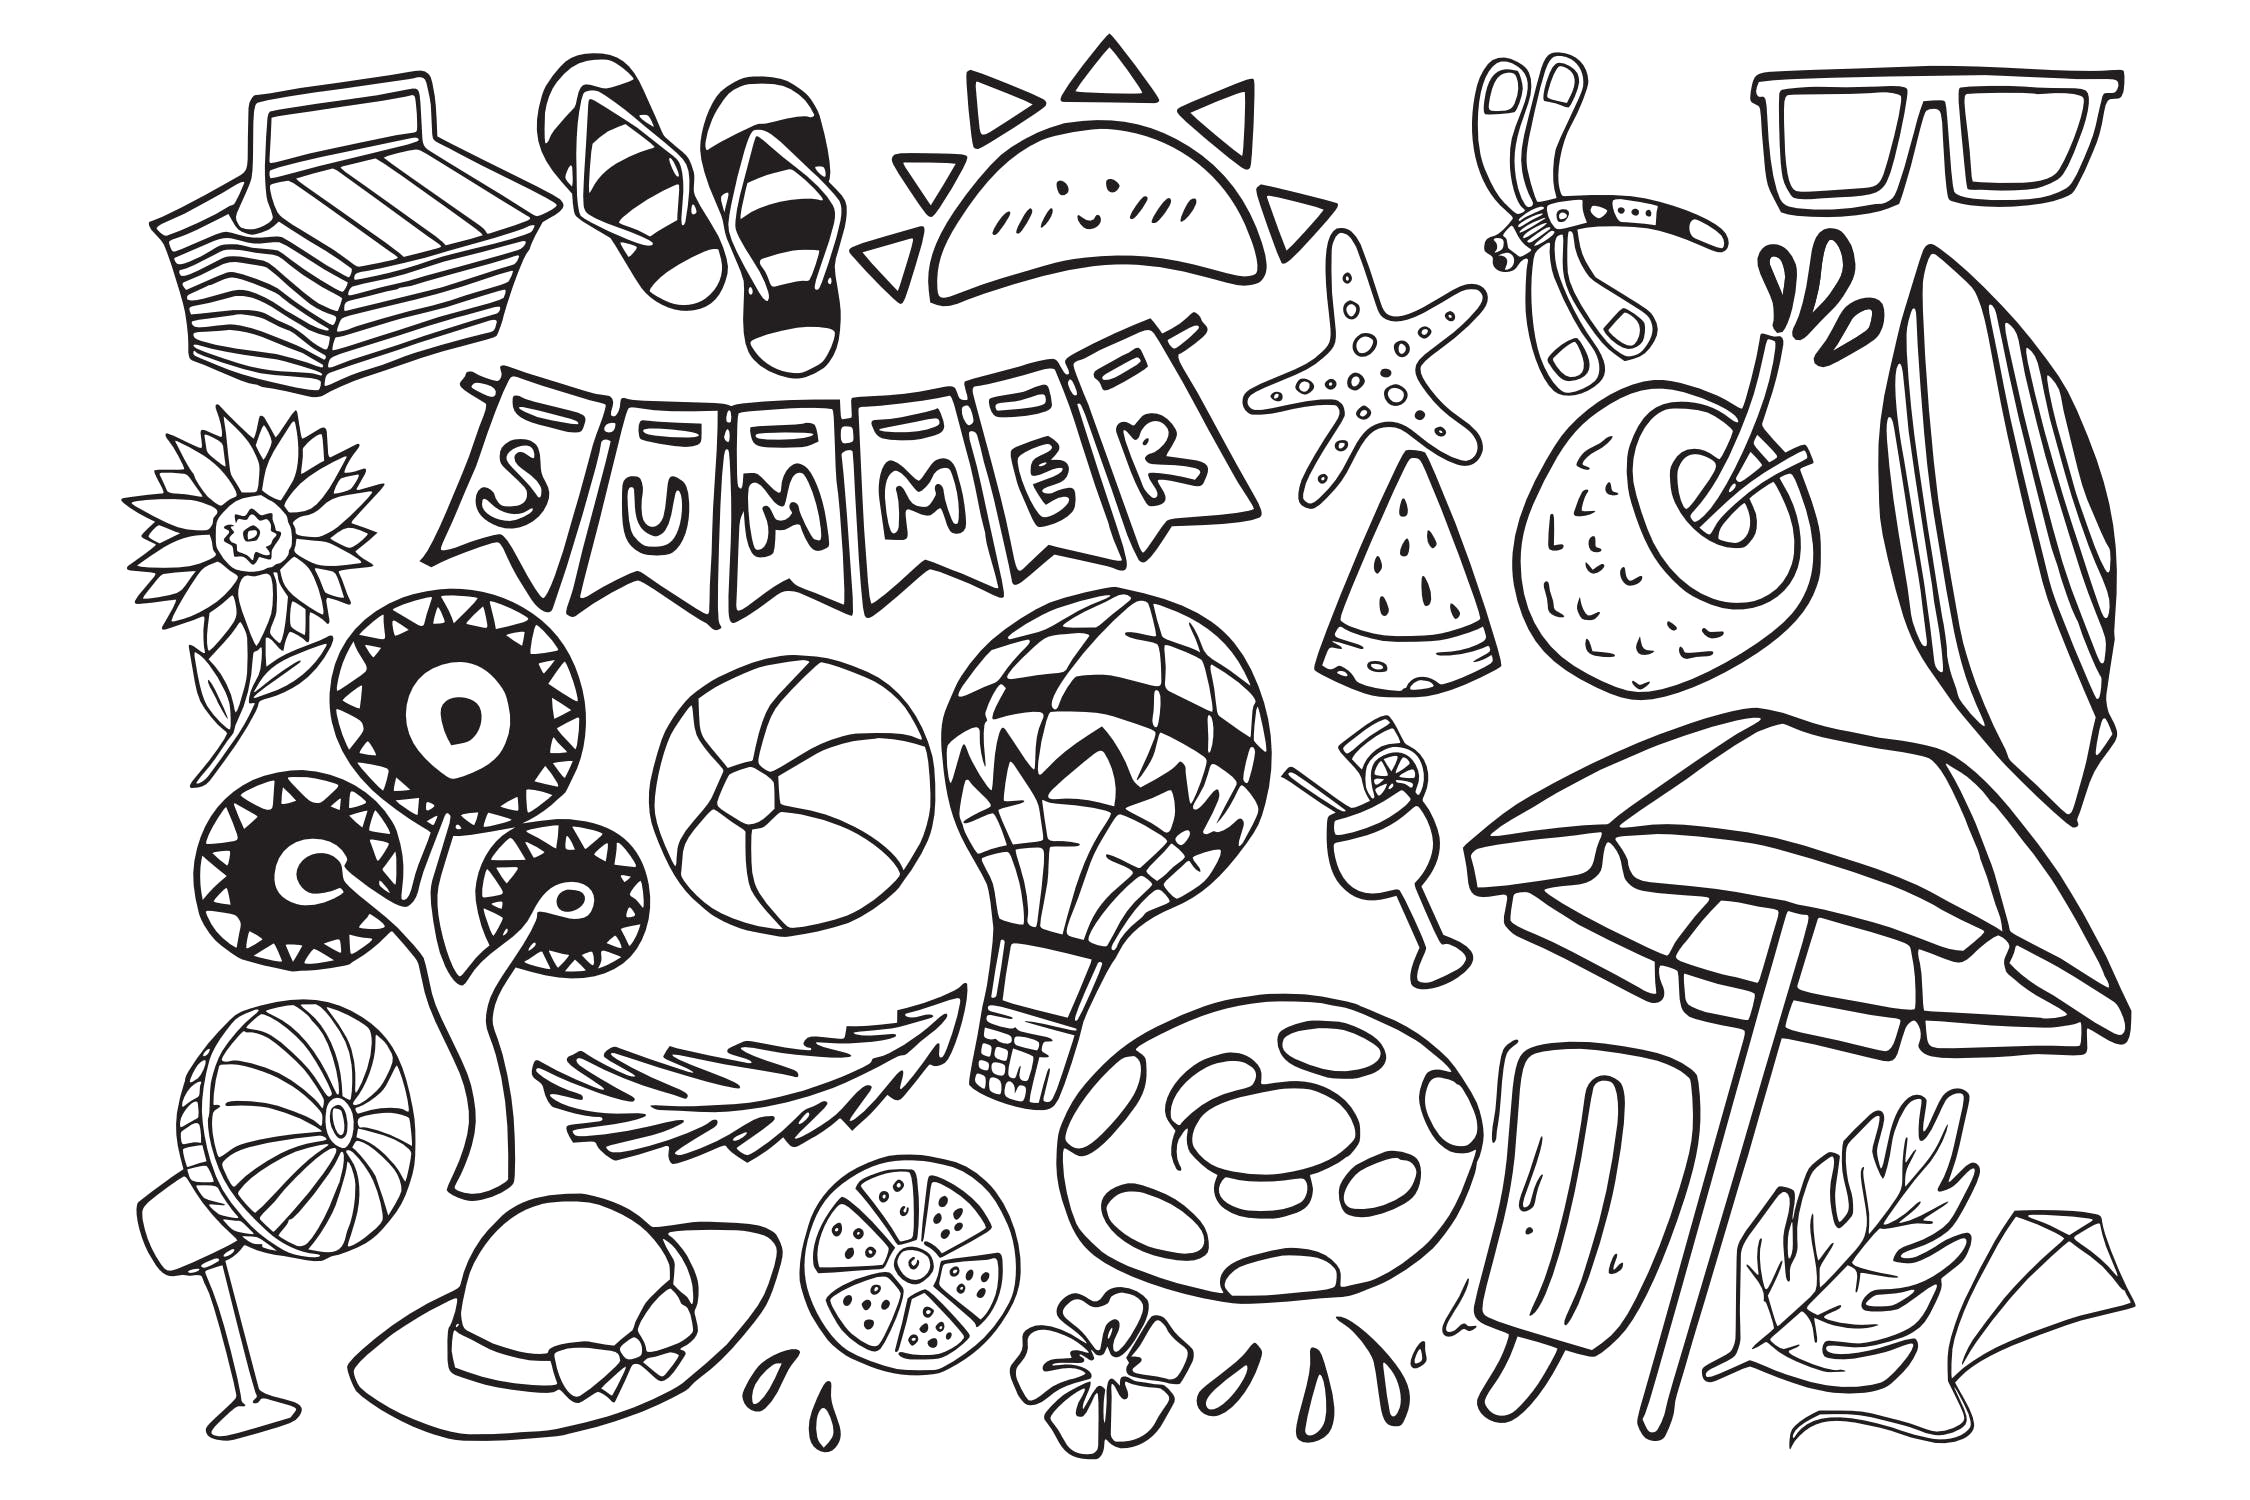 夏季主题涂鸦手绘矢量图案素材 Summer Stuff Doodle Vector插图1